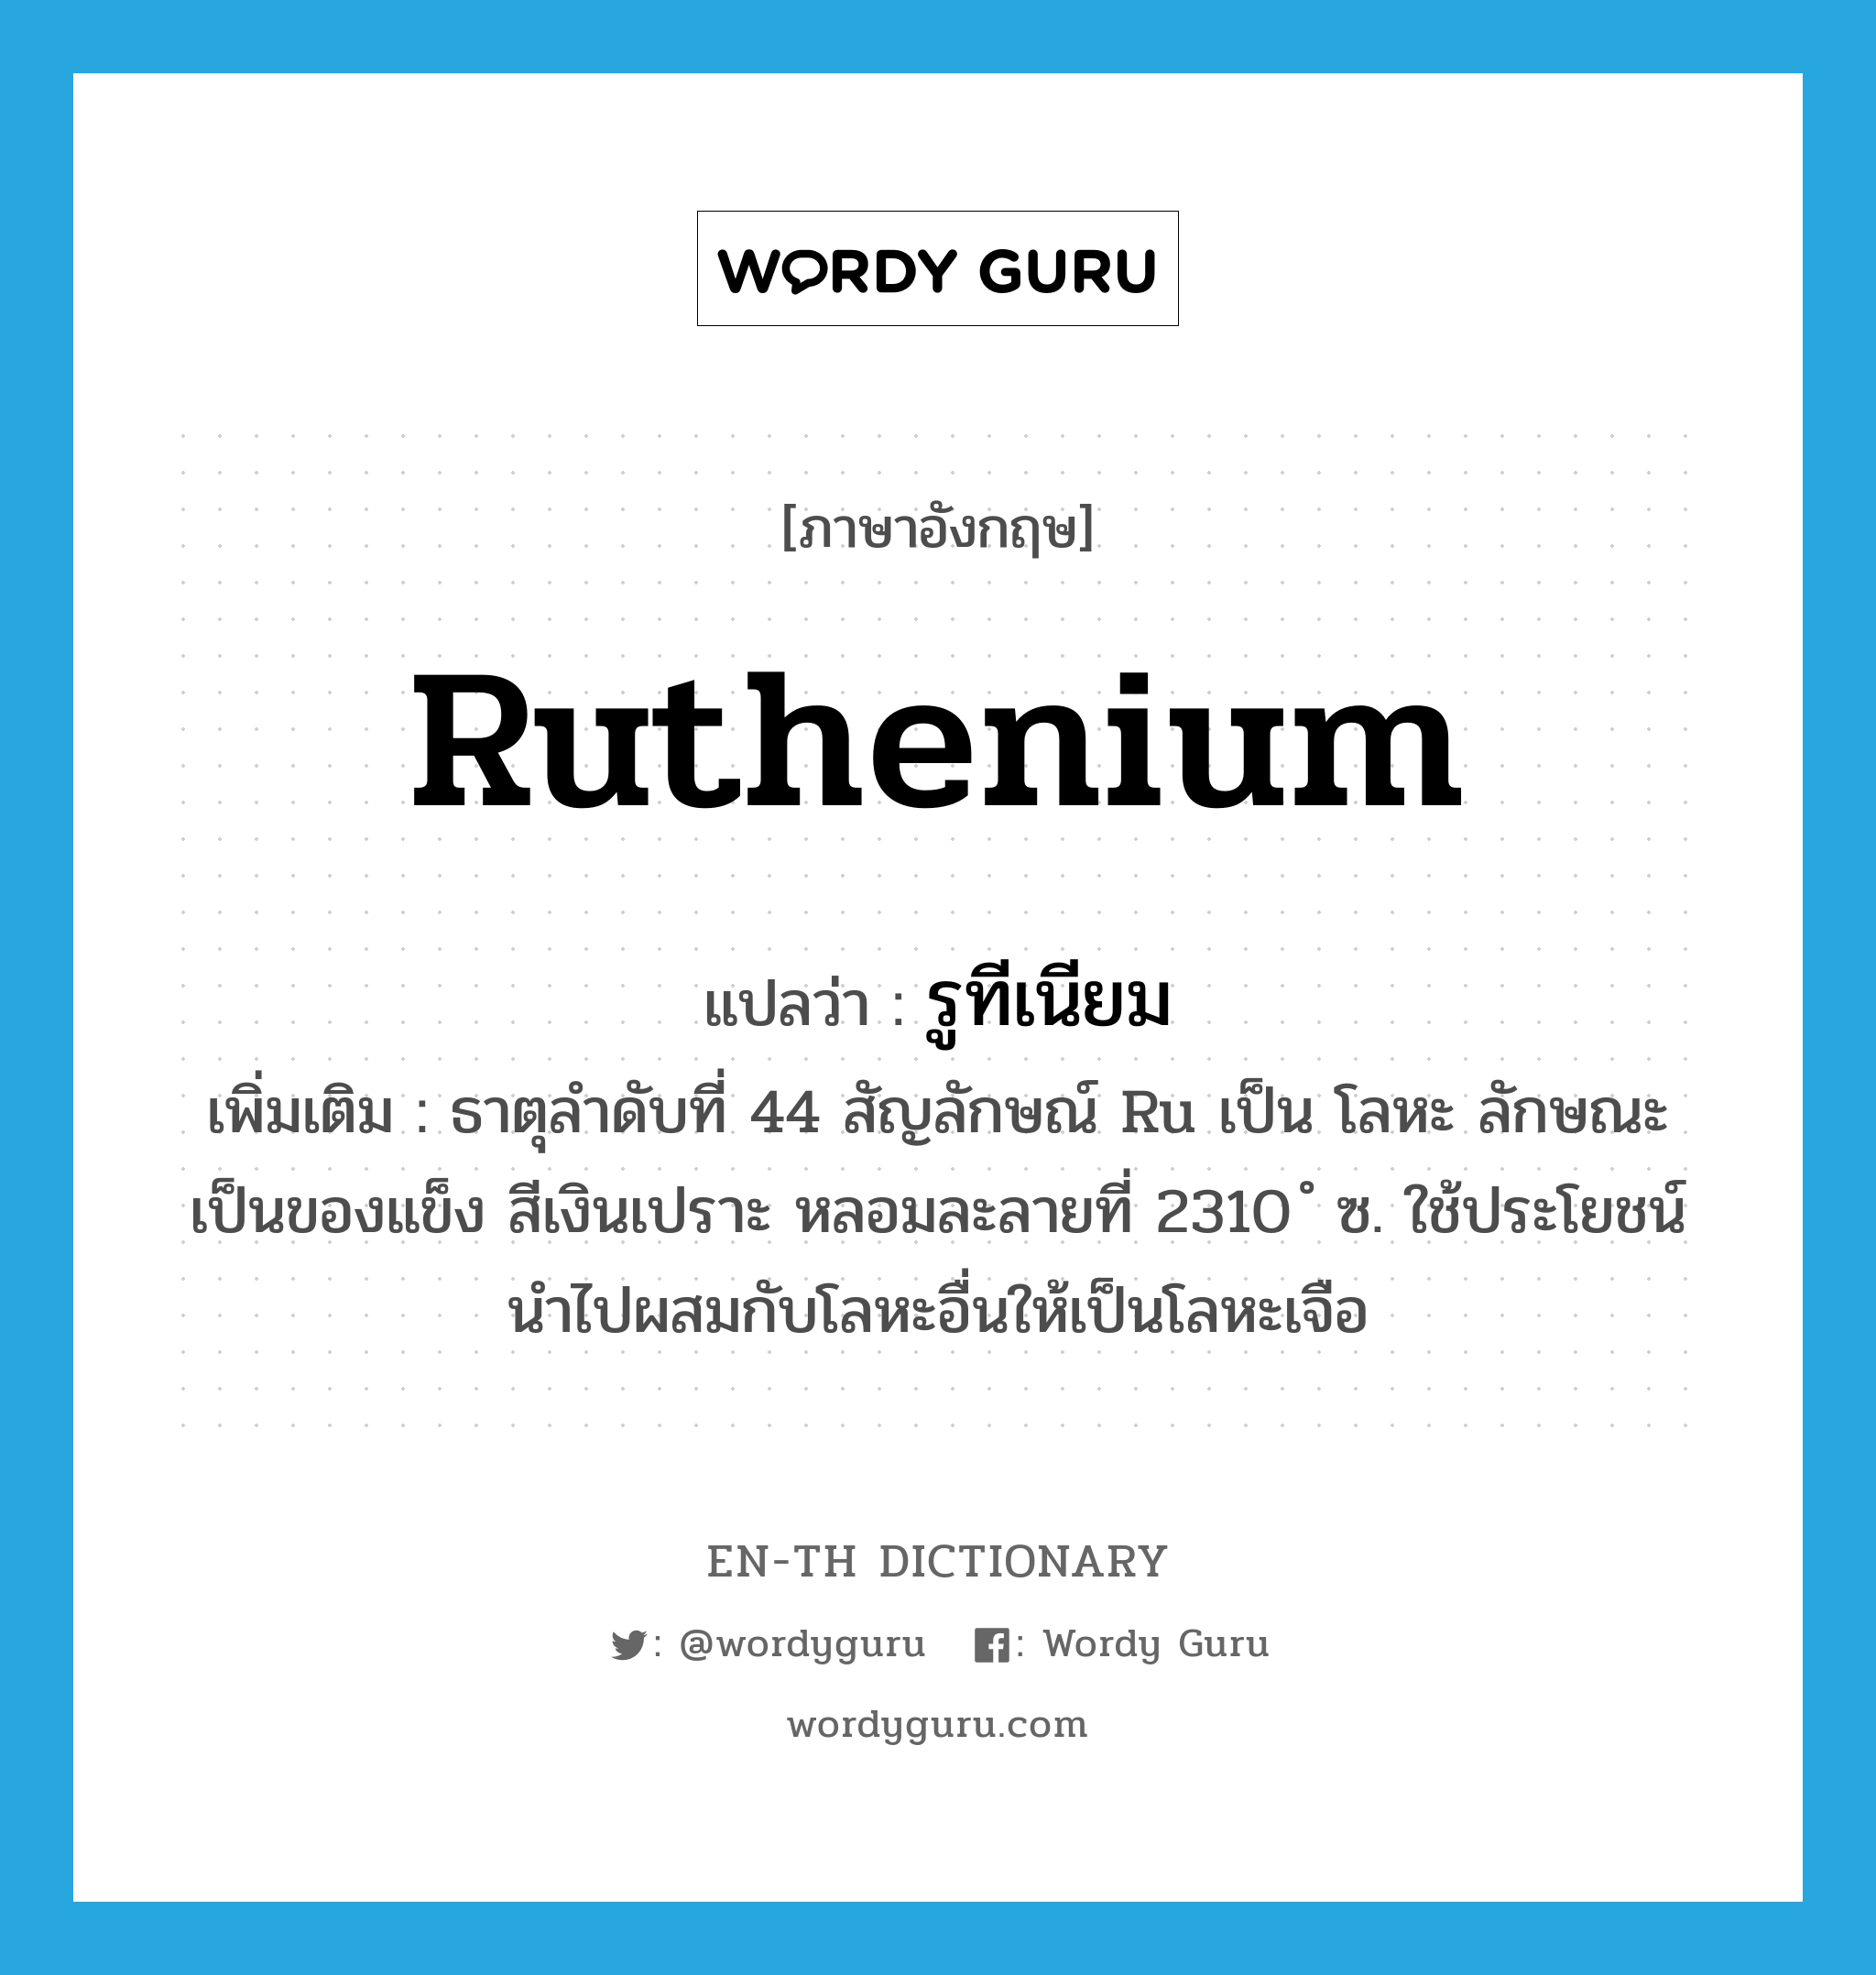 รูทีเนียม ภาษาอังกฤษ?, คำศัพท์ภาษาอังกฤษ รูทีเนียม แปลว่า ruthenium ประเภท N เพิ่มเติม ธาตุลำดับที่ 44 สัญลักษณ์ Ru เป็น โลหะ ลักษณะเป็นของแข็ง สีเงินเปราะ หลอมละลายที่ 2310 ํ ซ. ใช้ประโยชน์นำไปผสมกับโลหะอื่นให้เป็นโลหะเจือ หมวด N